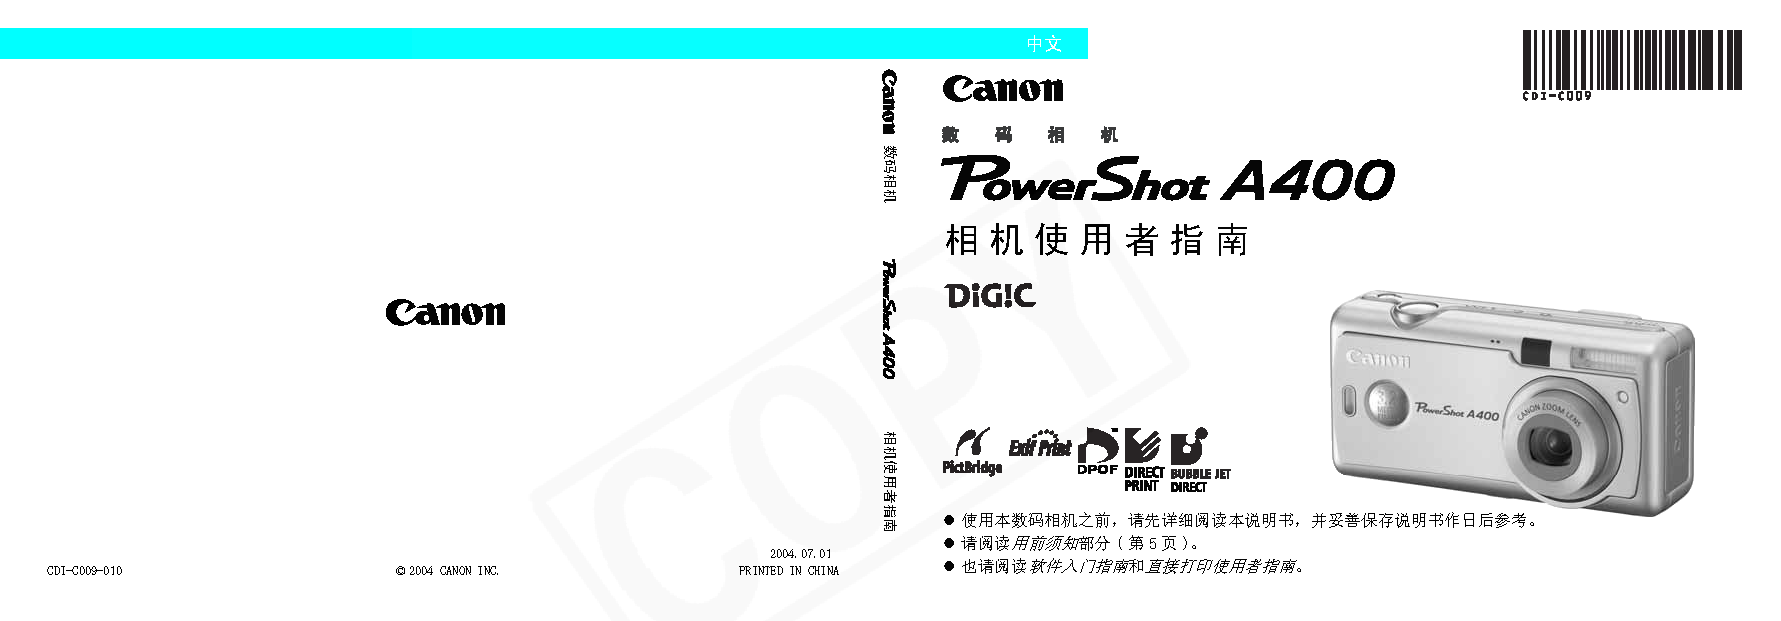 佳能 Canon PowerShot A400 用户指南 封面